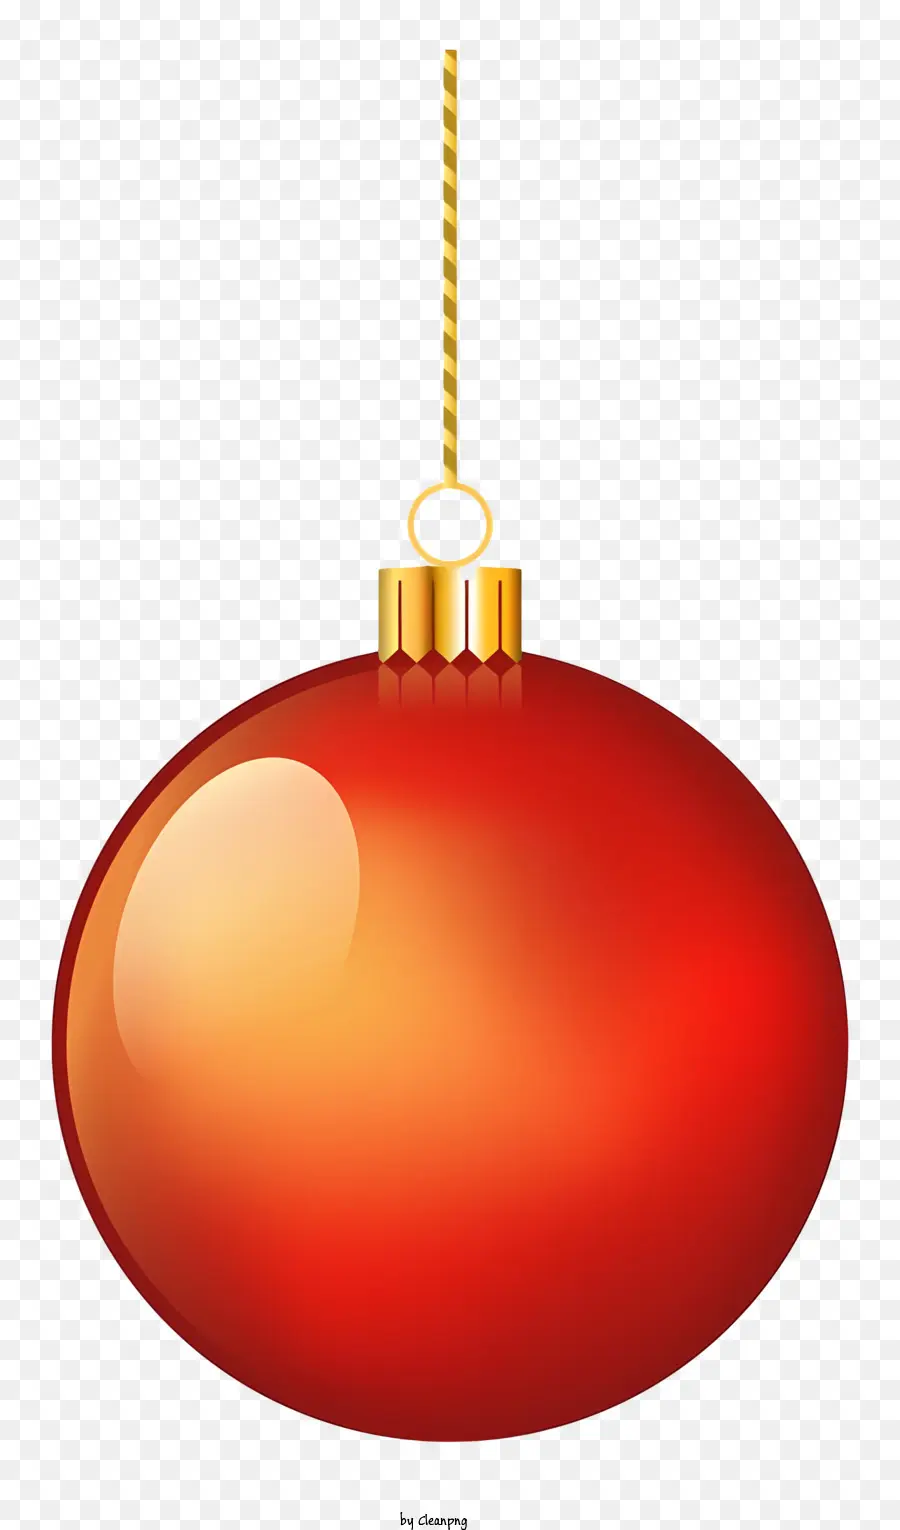 Ornamento di natale - Ornamento di Natale rosso sulla catena dorata, finitura brillante